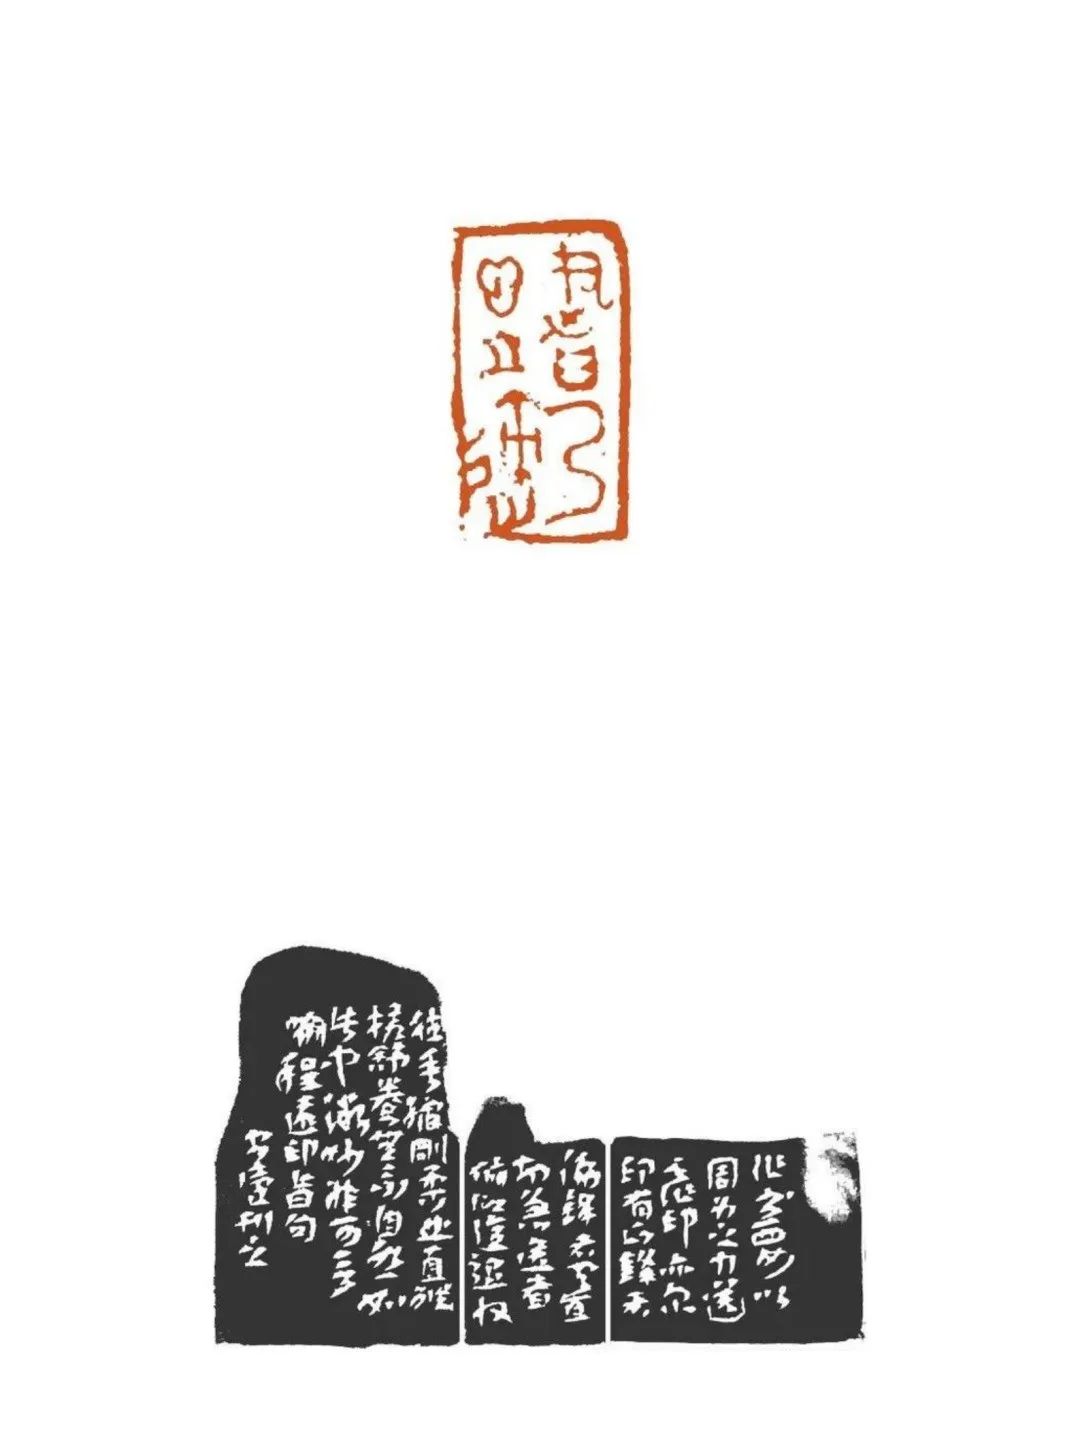 因为“太平常”乃获大认可——陈靖的篆刻作品不以怪诞取胜，以雅正解读古代原始朴素的艺术